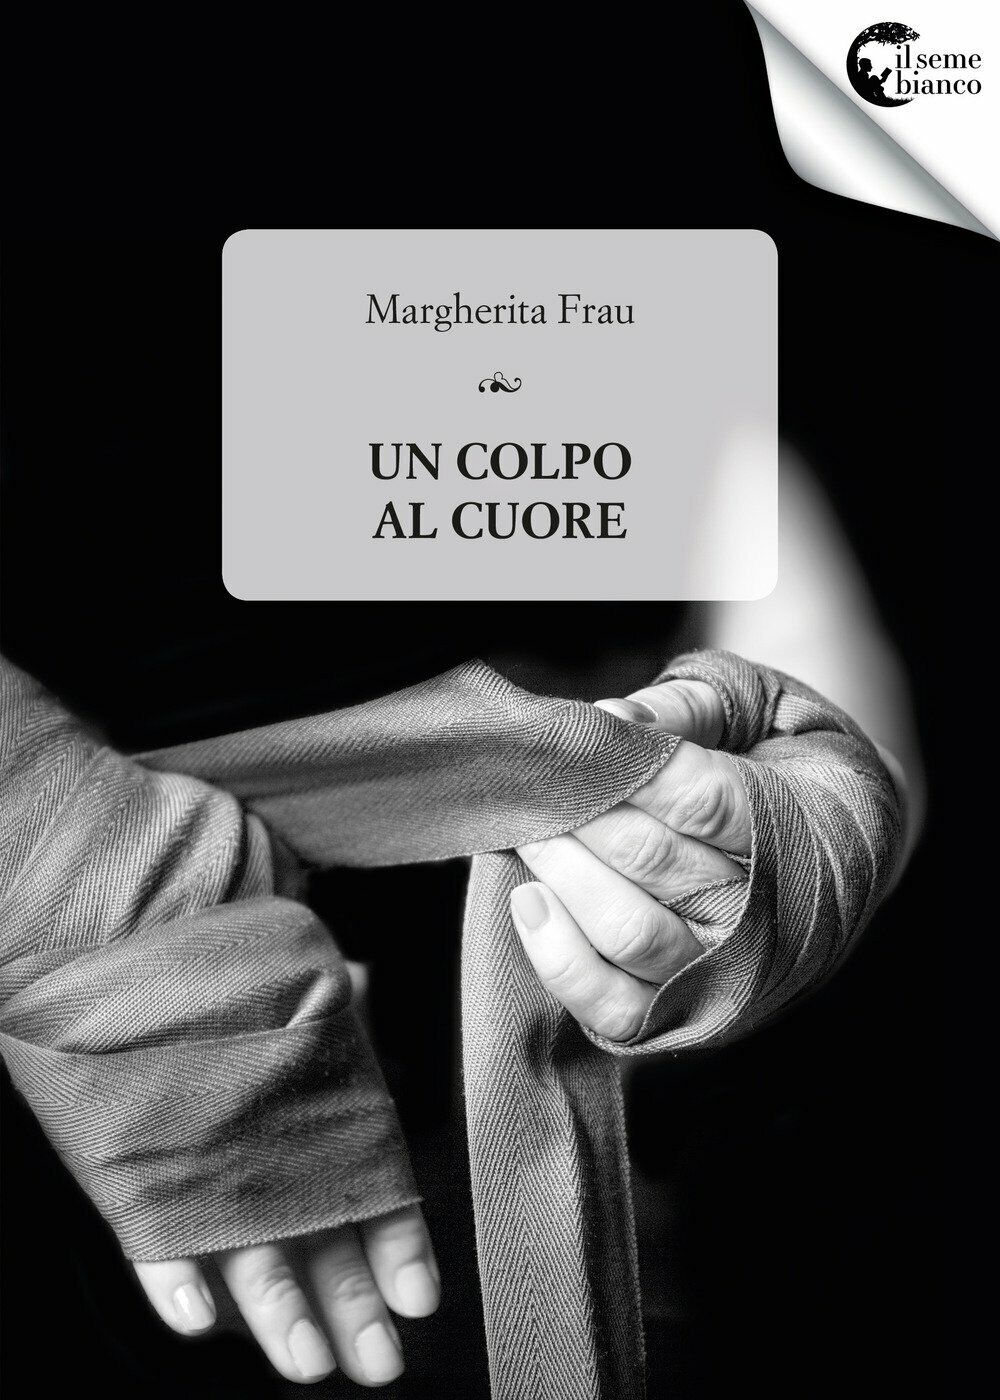 Un colpo al cuore - Margherita Frau - Il Seme Bianco, 2017